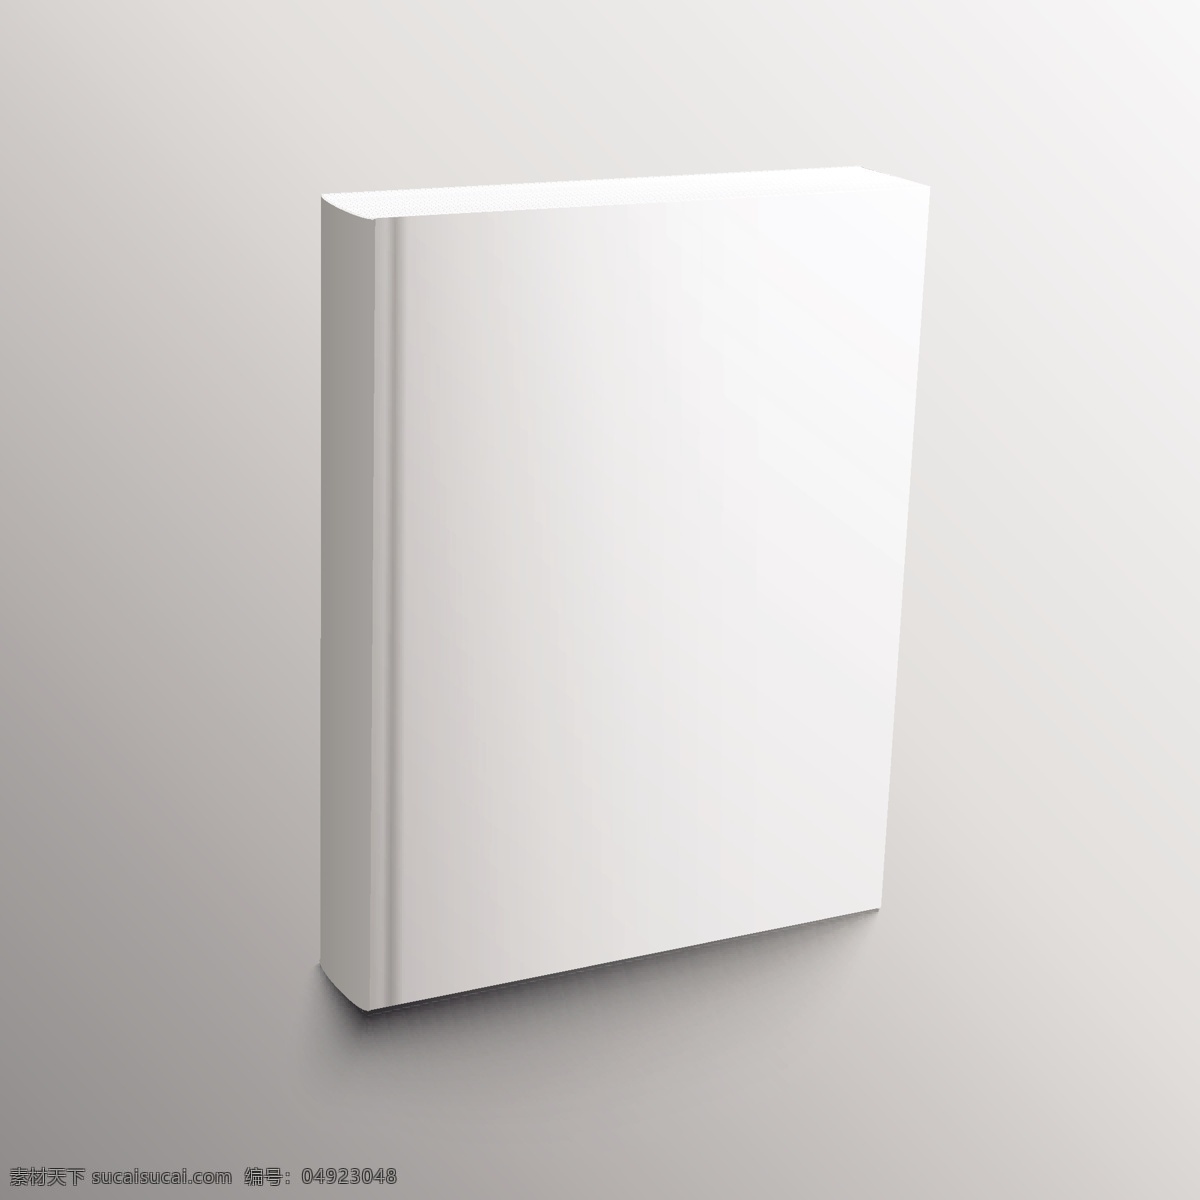 空 书 逼真 模拟 模型 卡片 模板 纸 杂志 网站 空间 呈现优雅 样机 白色的小册子 灰色的影子 显示 空白的 现实的 空的